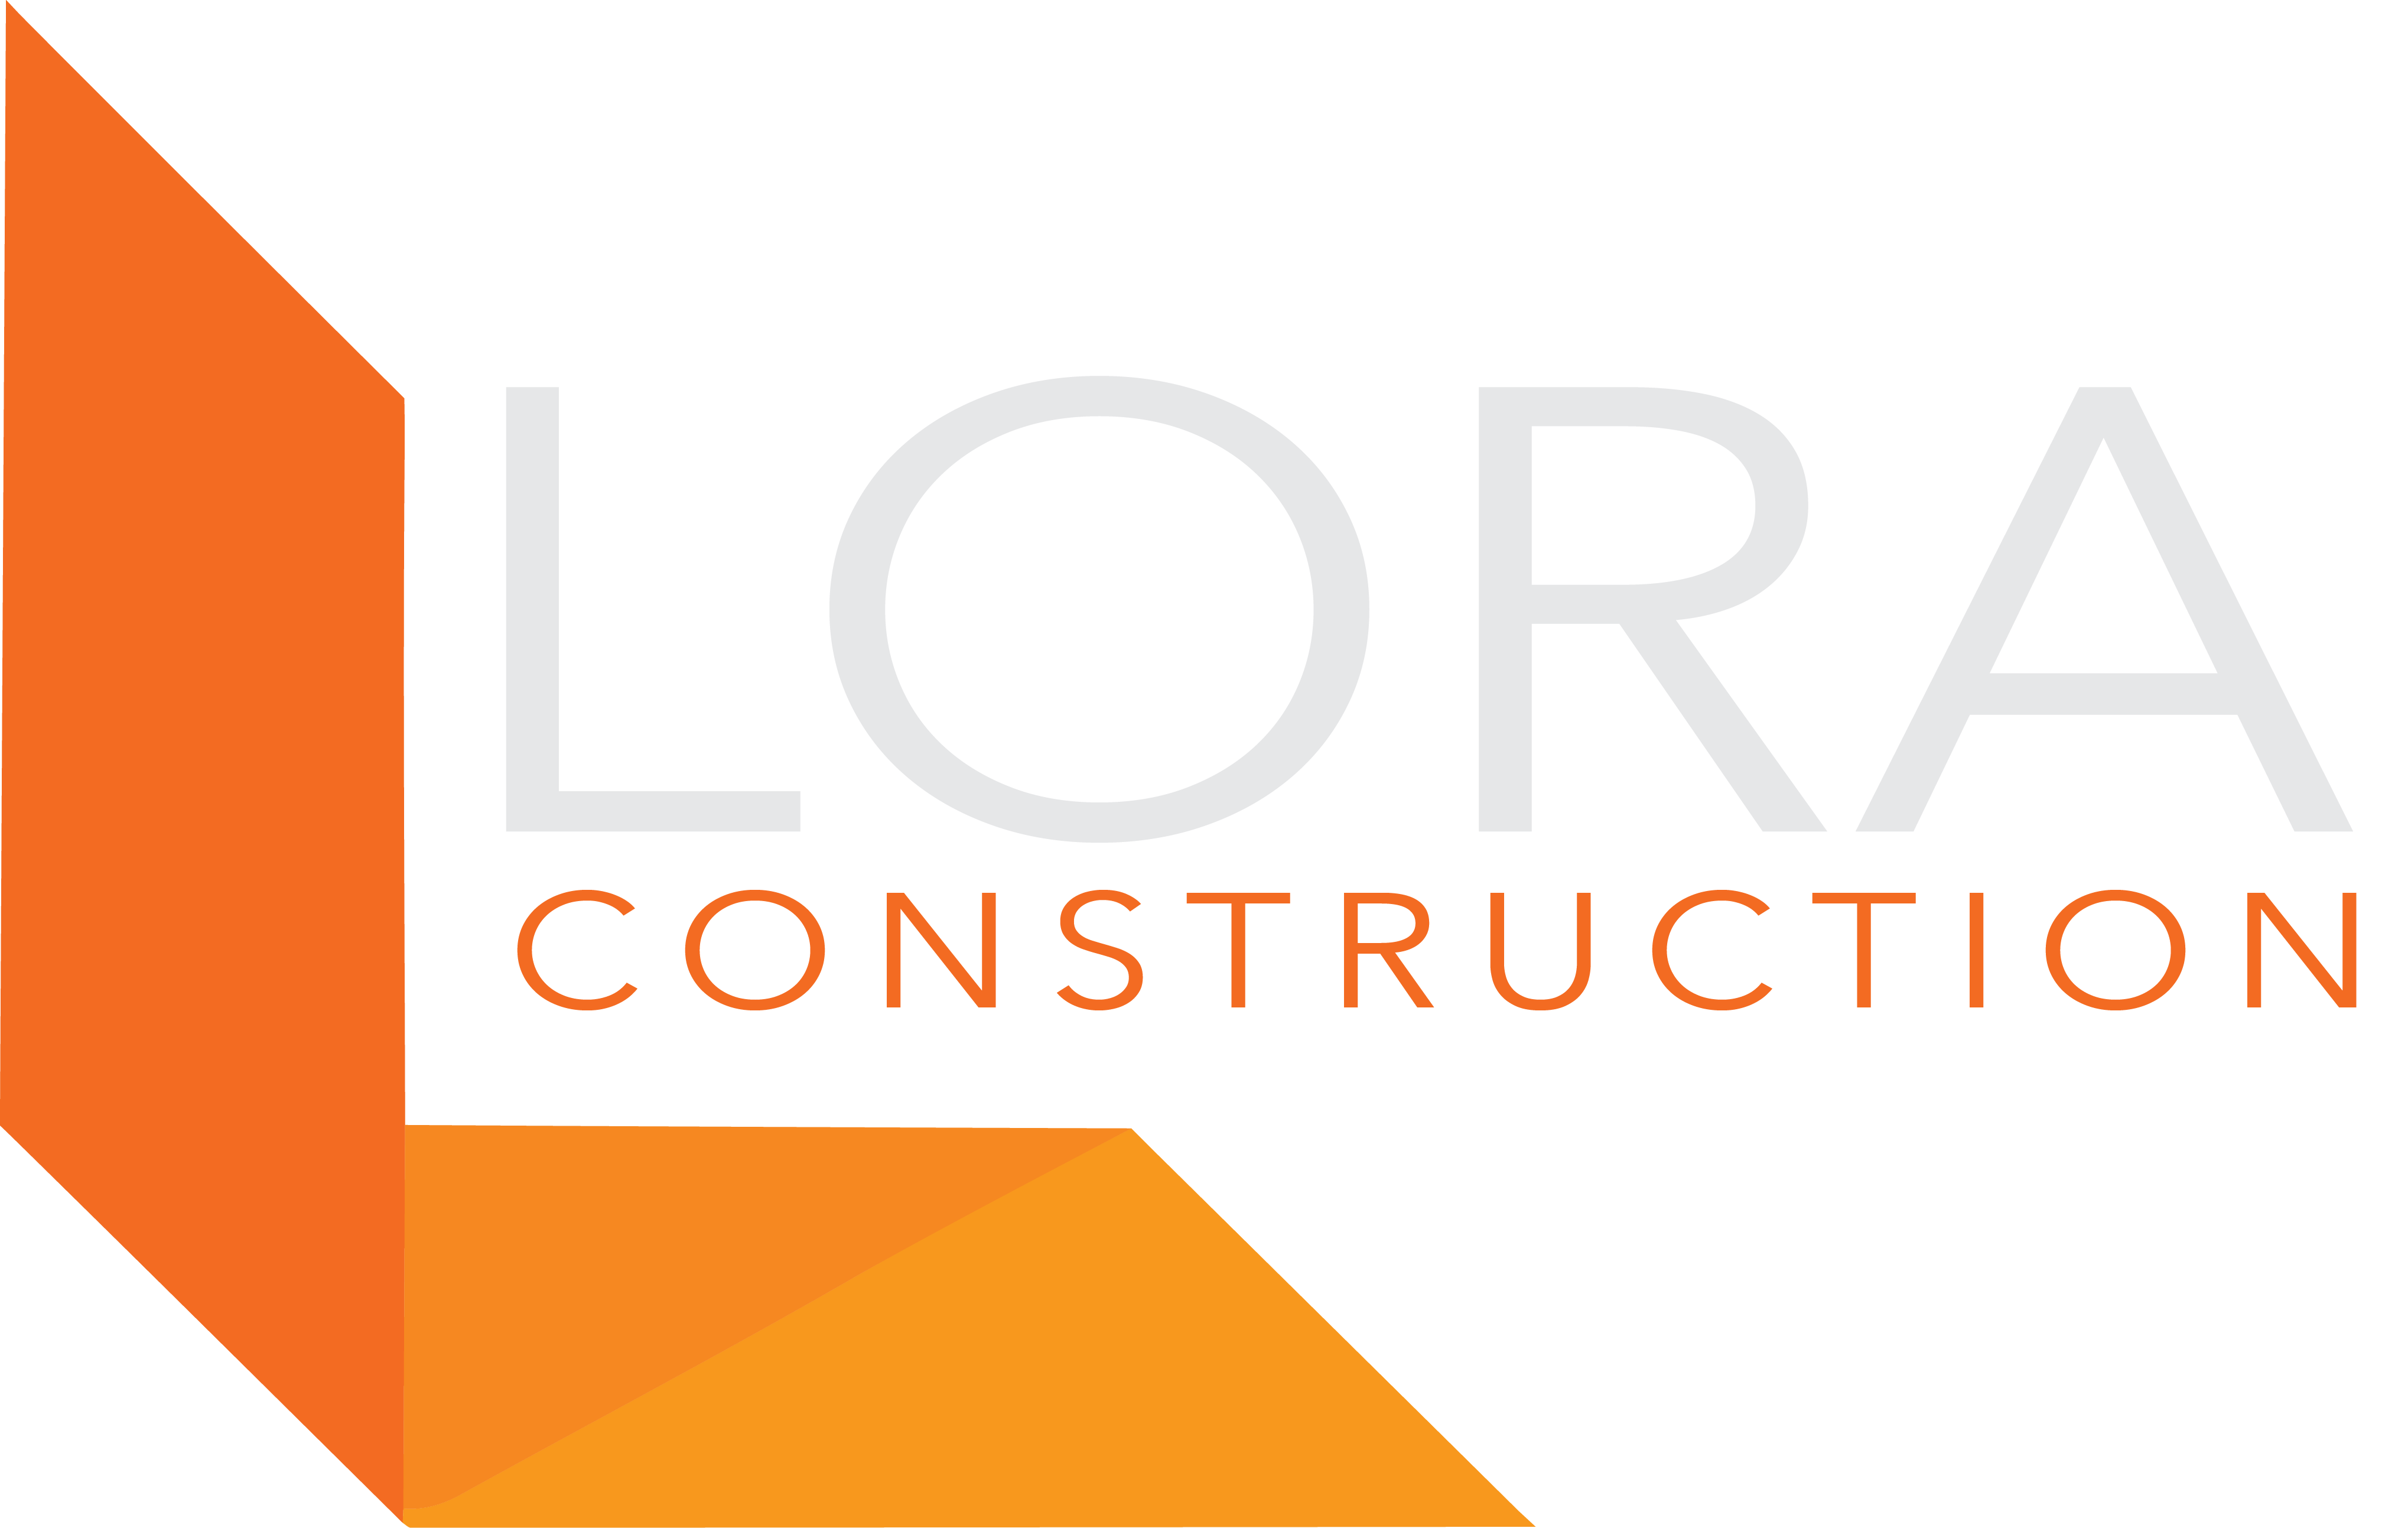 Lora Construction Corp